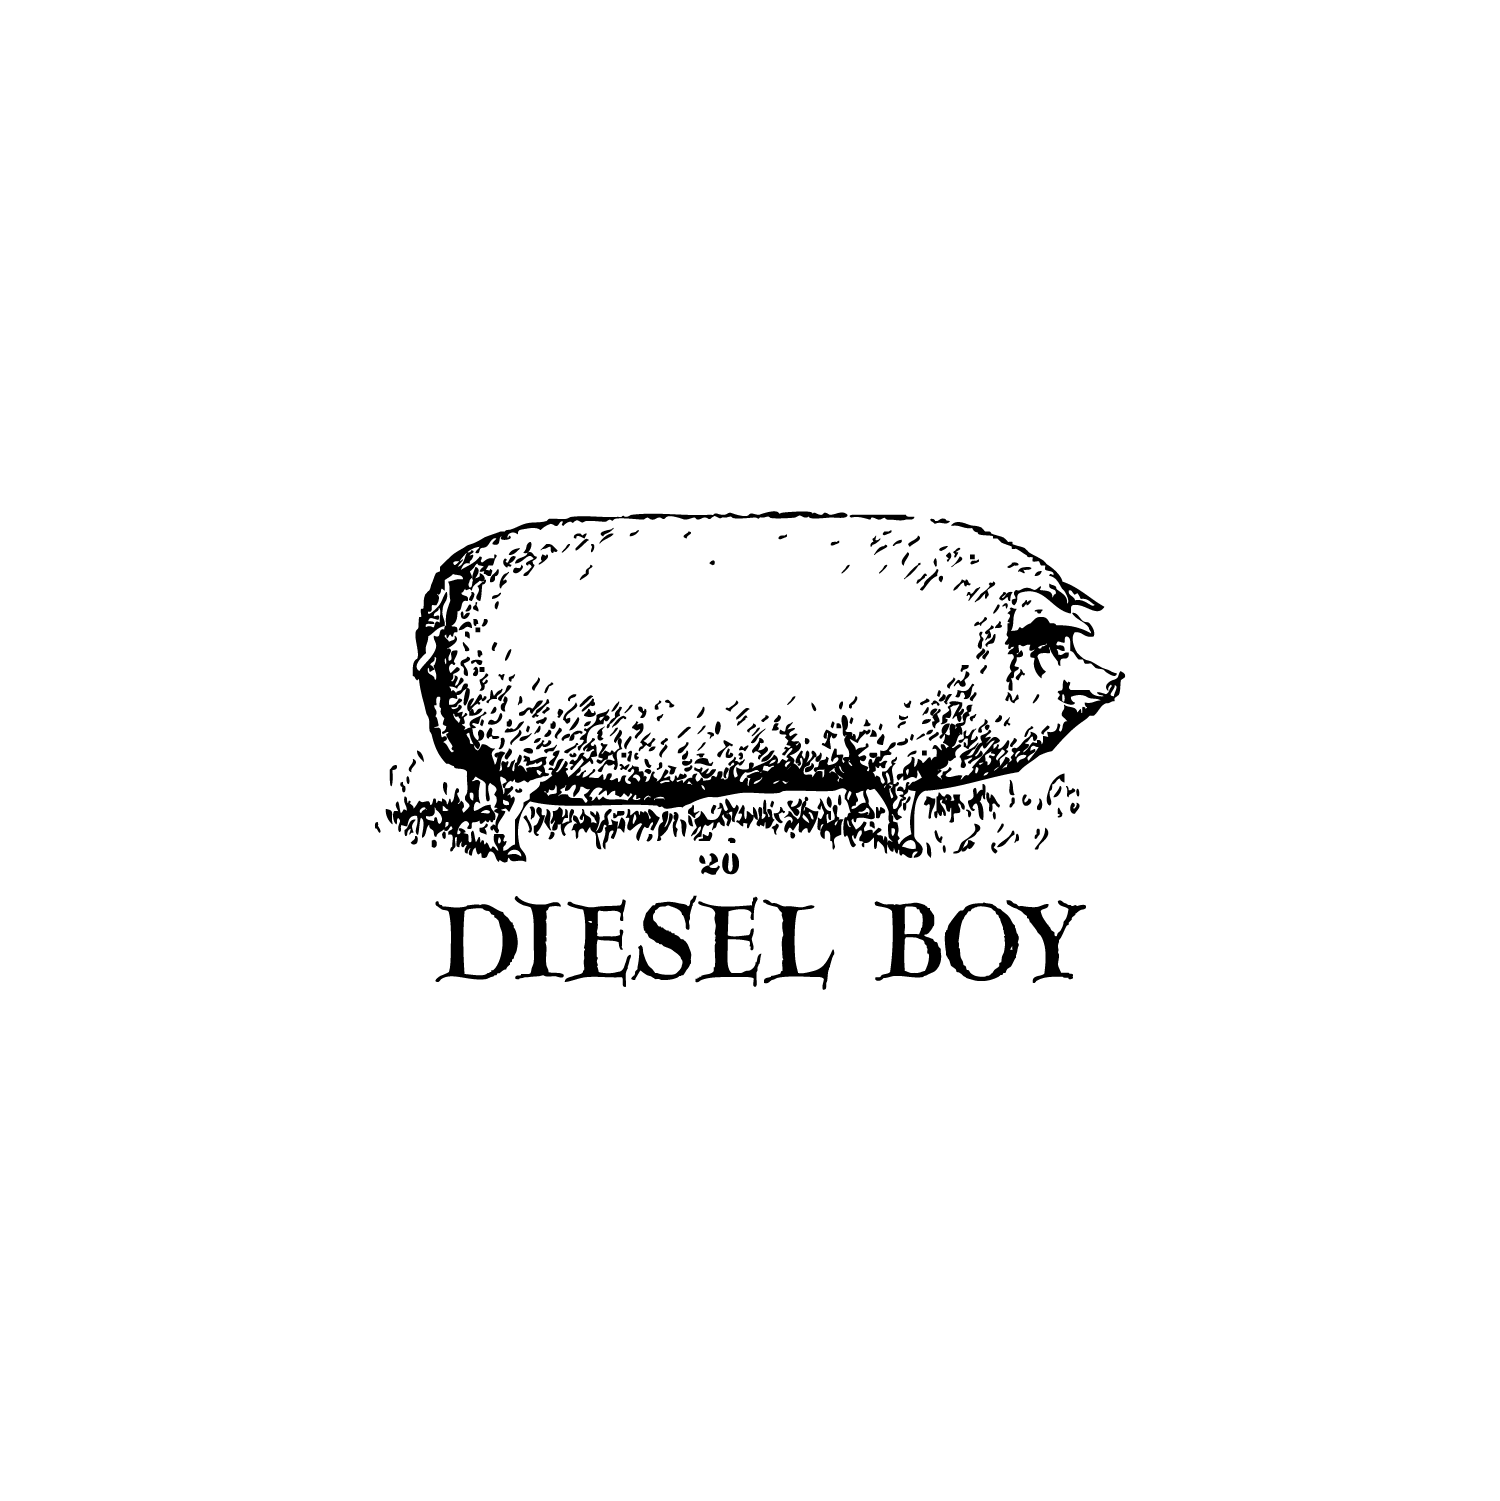 Diesel Boy logo by OLSON MCINTYRE